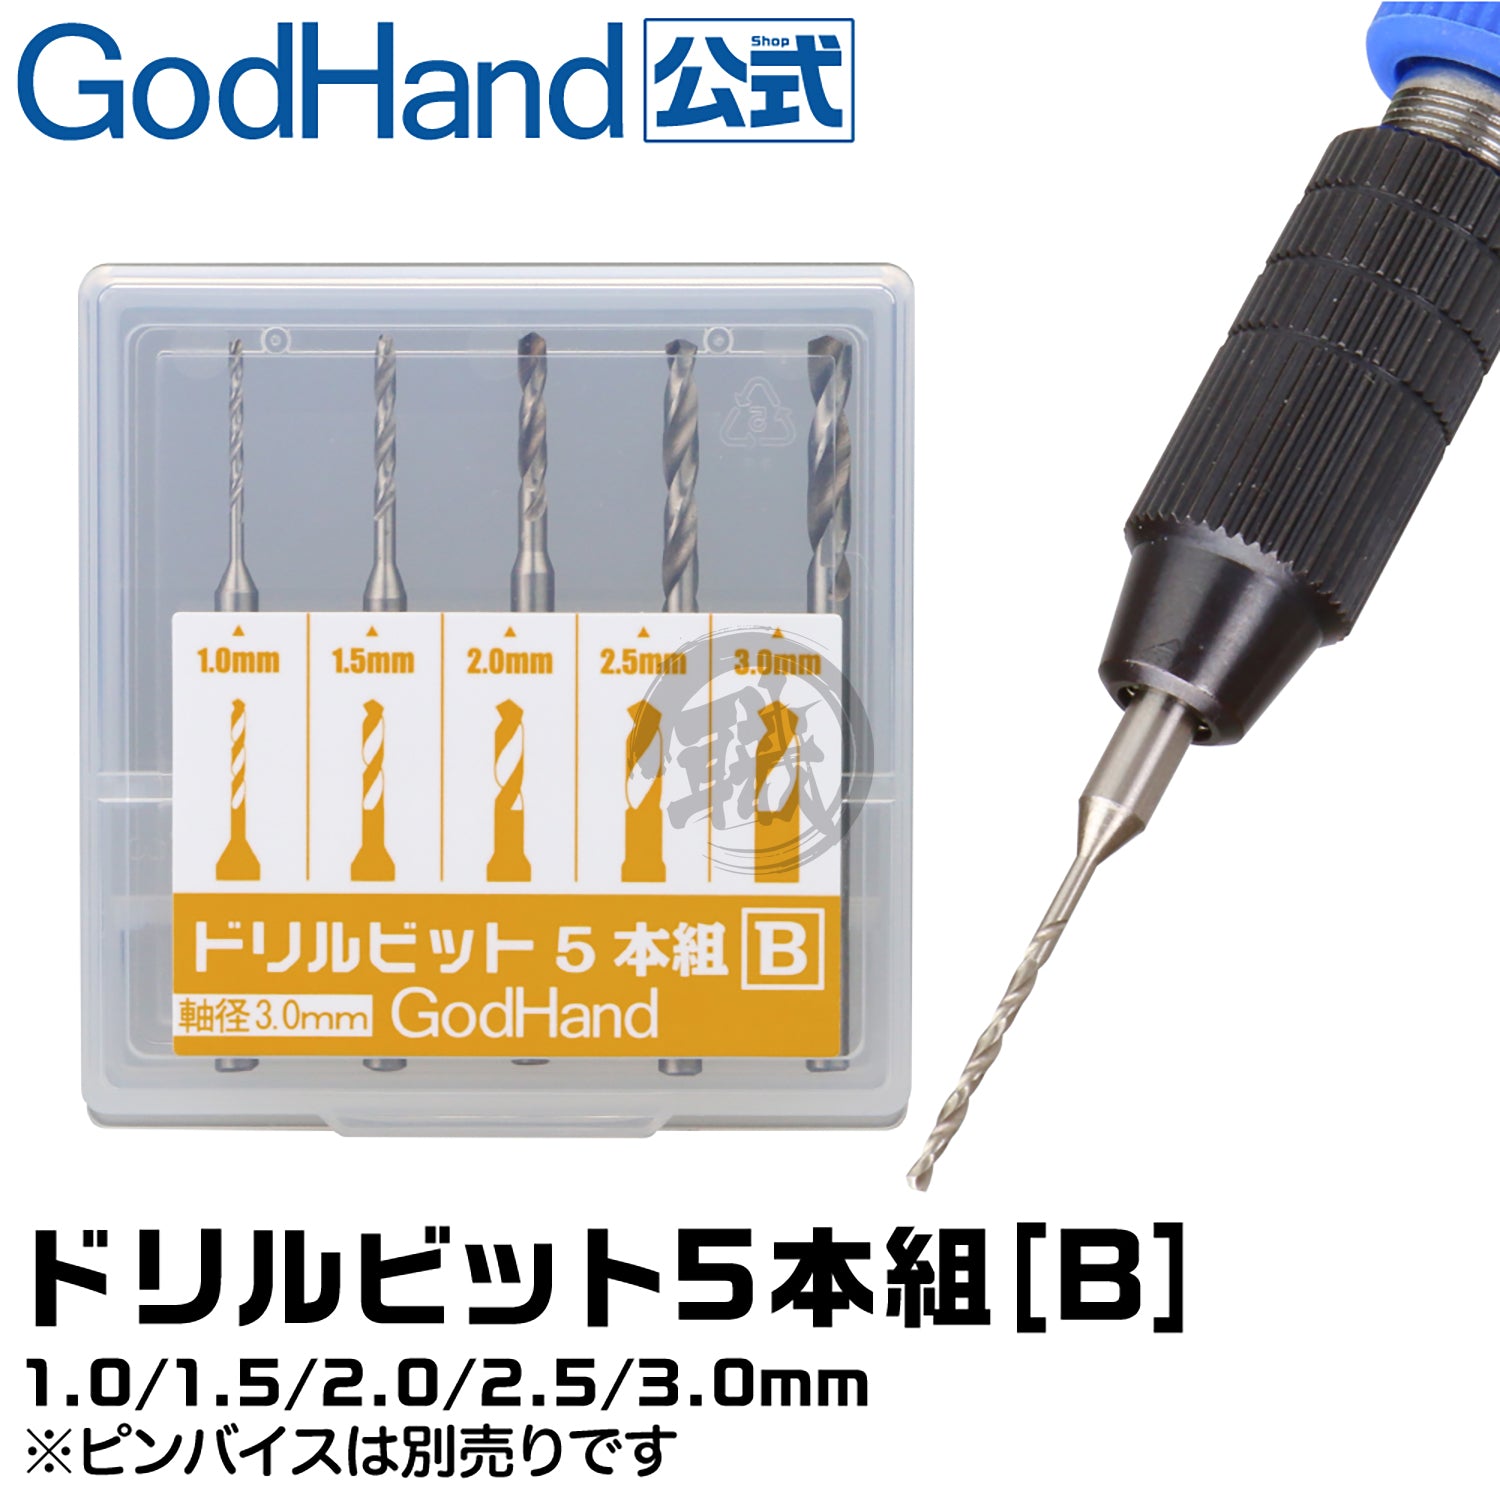 Godhand Tools - Drill Bit Set B [Set of 5] - ShokuninGunpla